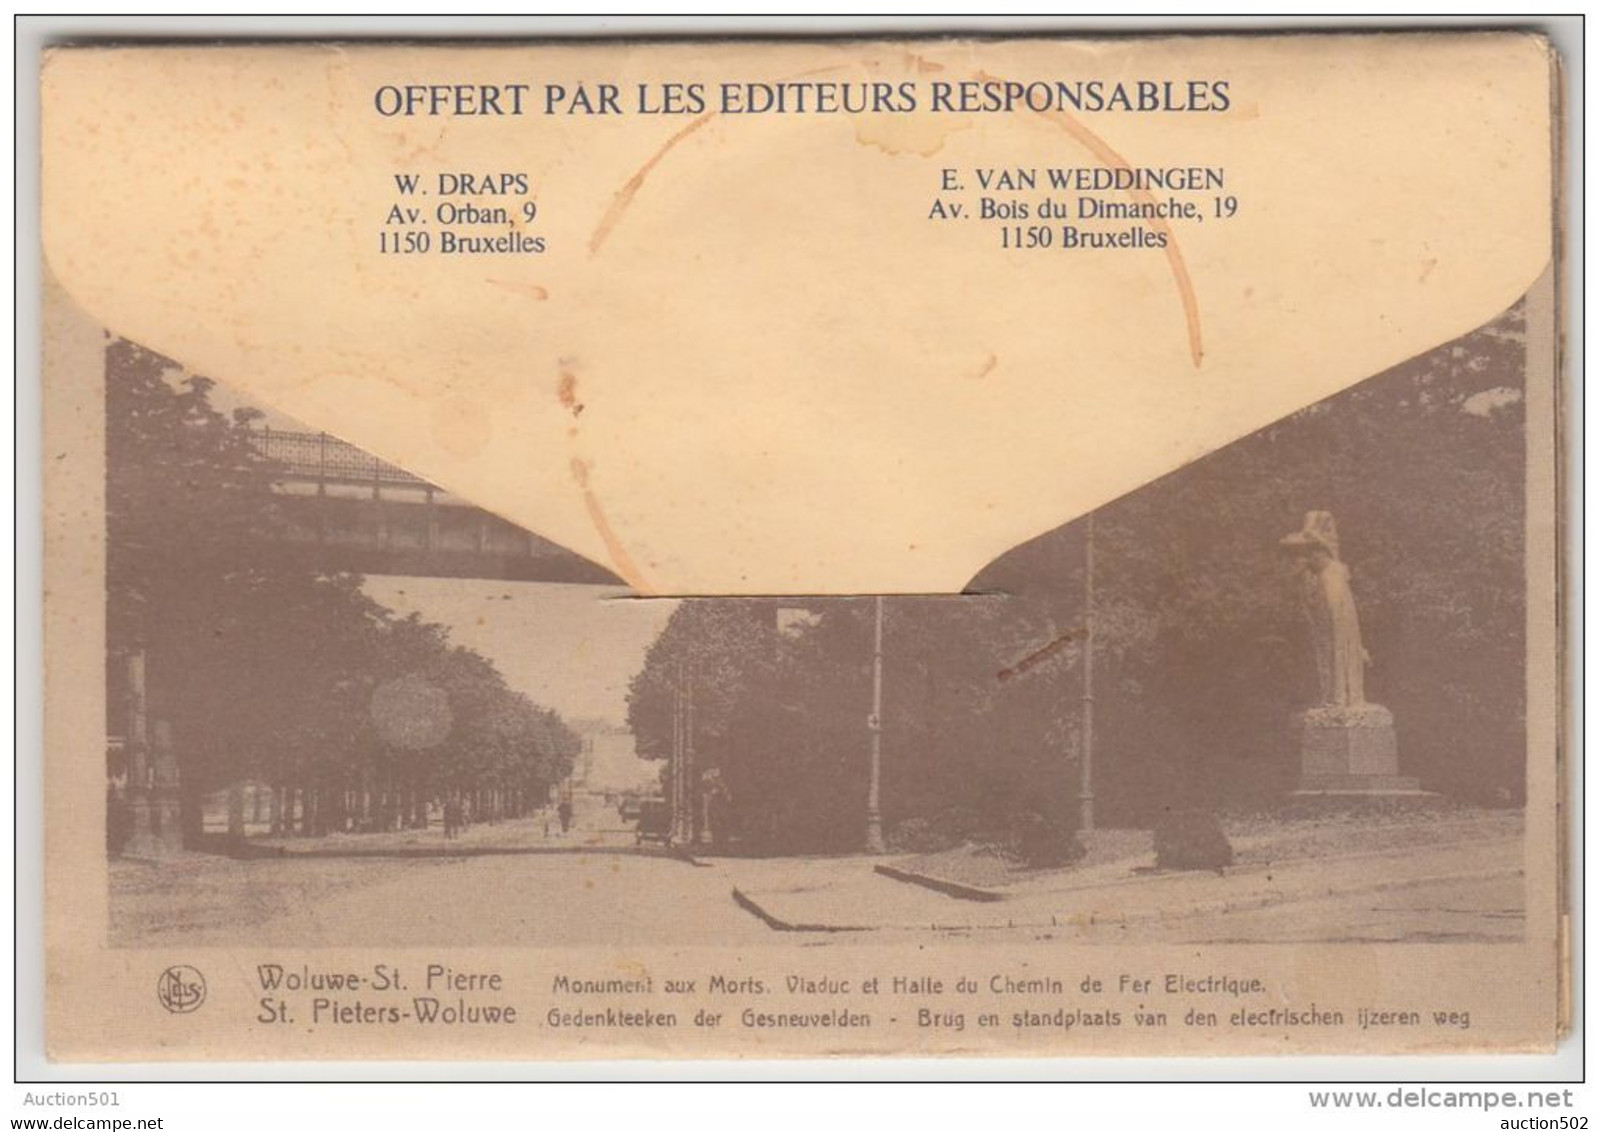 18287g CAFE RESTAURANT -  VIADUC - HALLE du CHEMIN de FER ELECTRIQUE - MAISON COMMUNALE - Woluwe St-Pierre